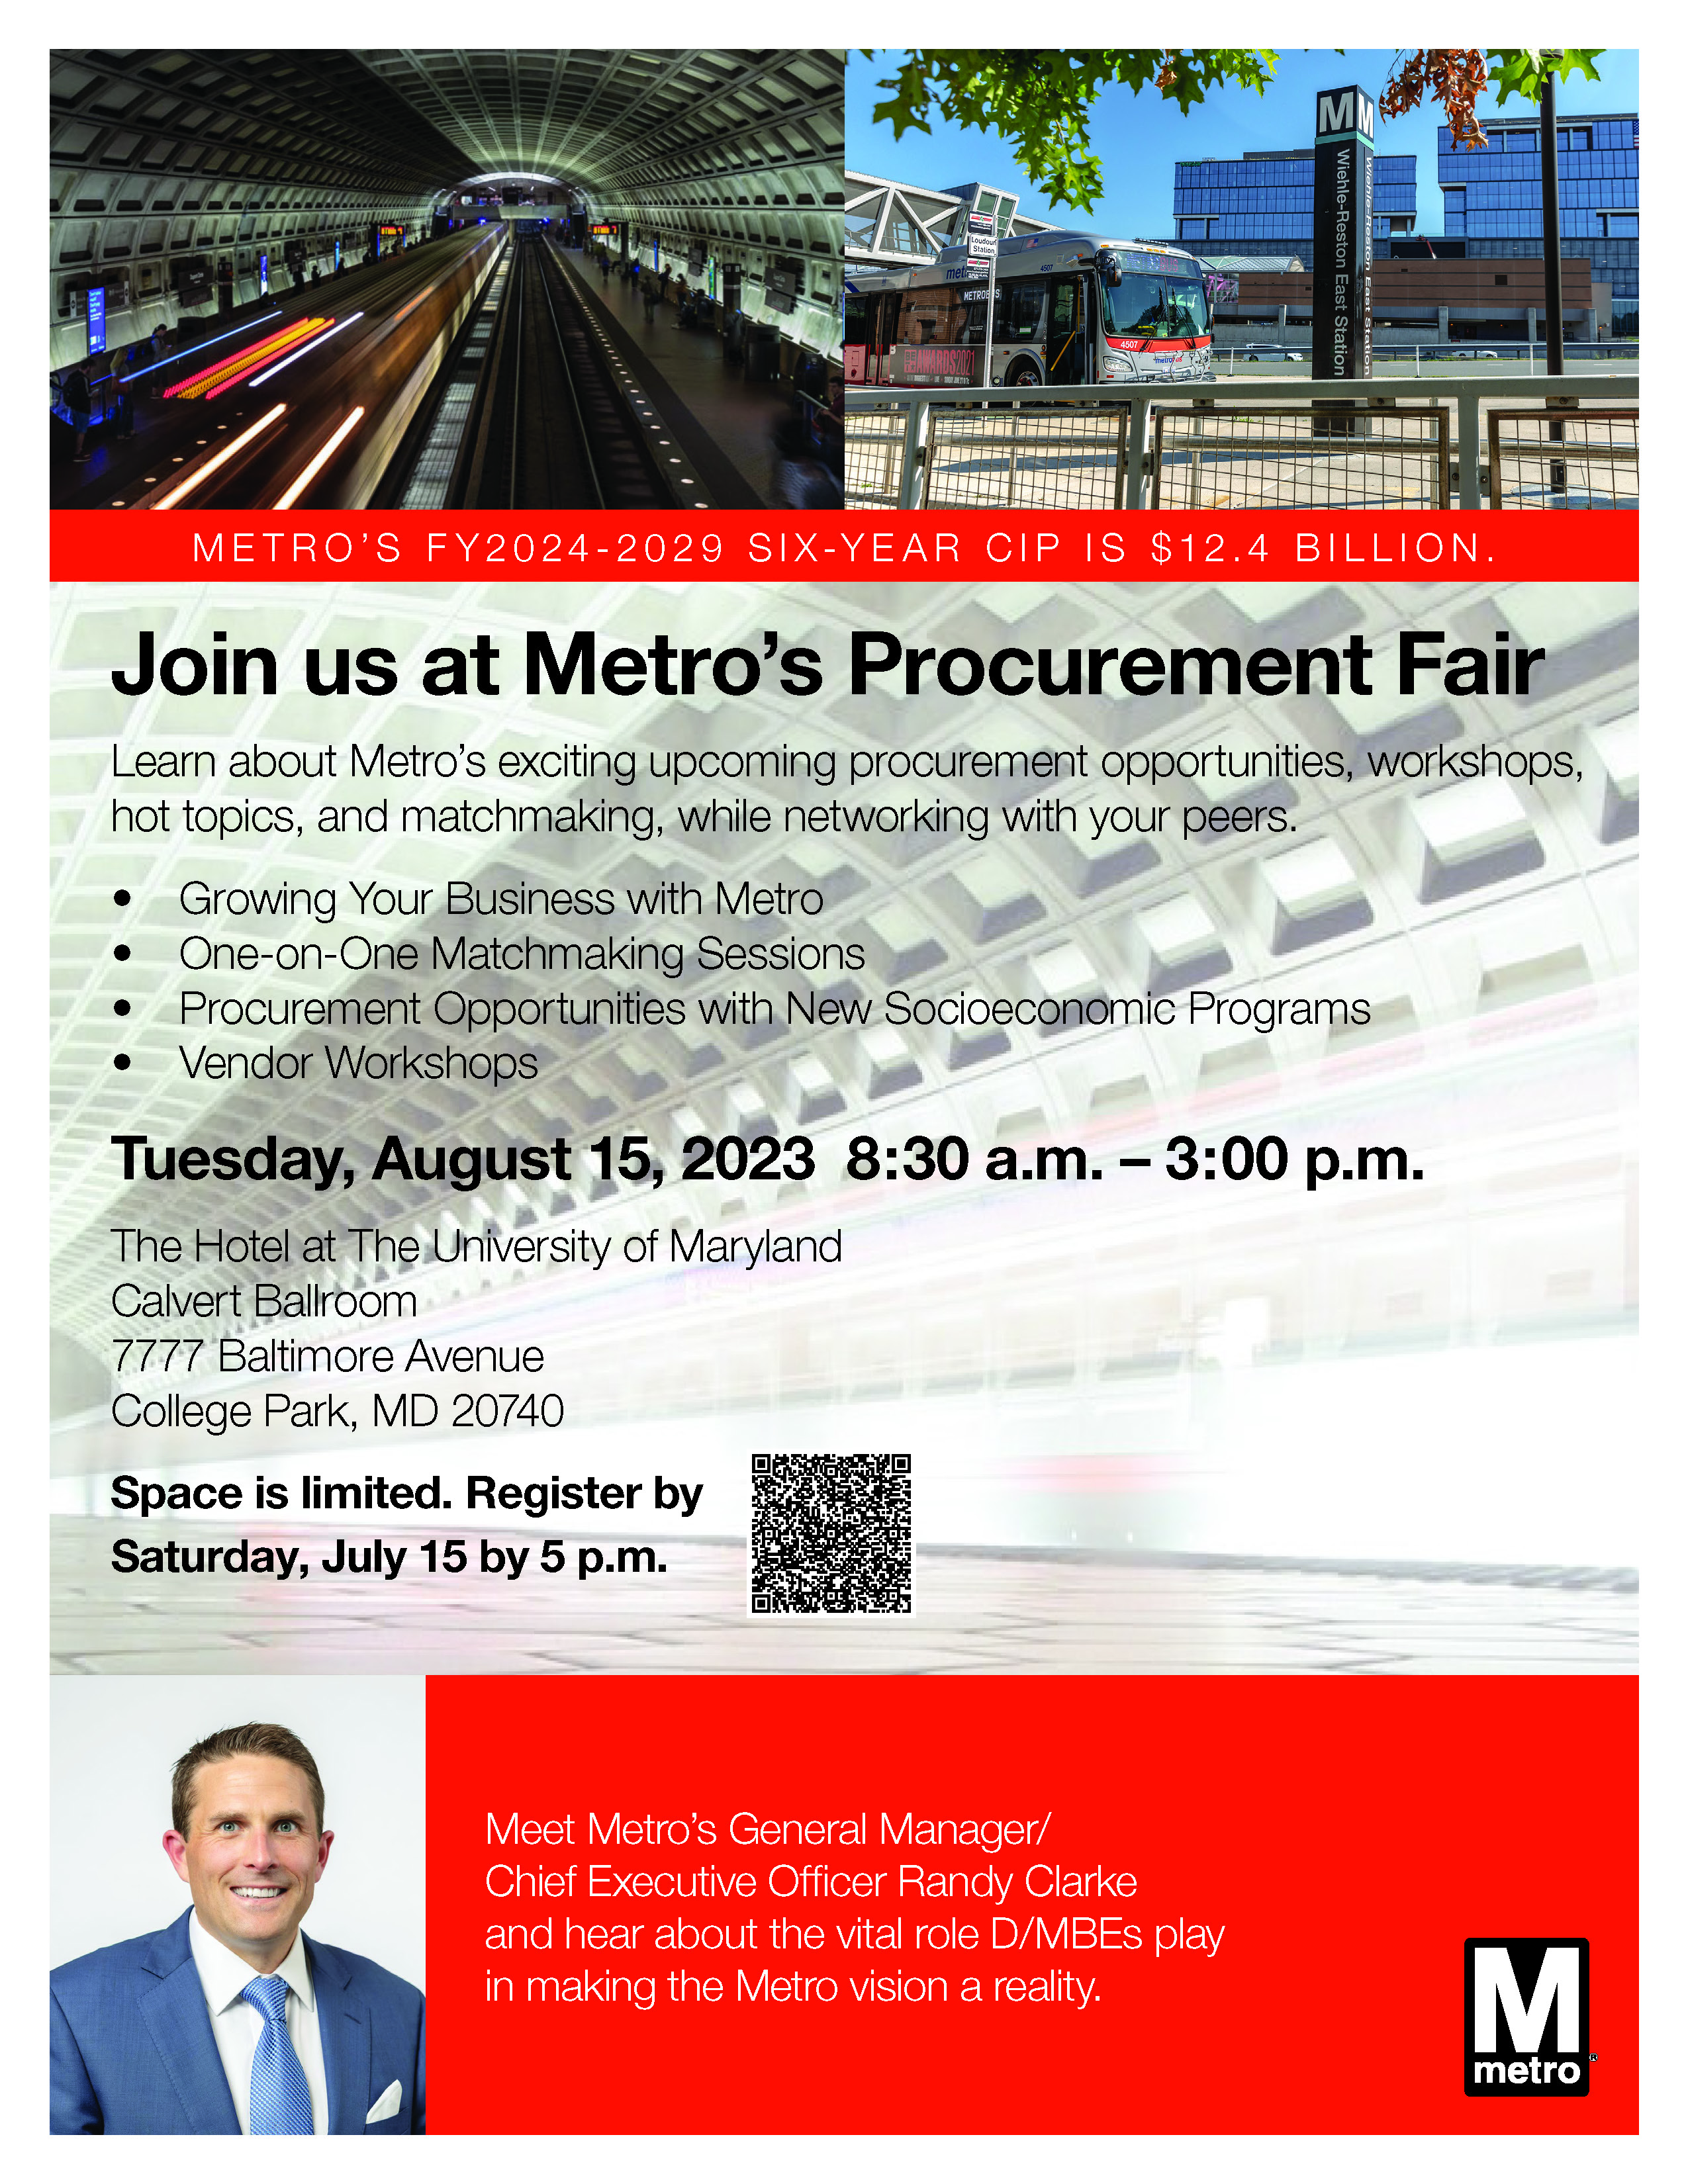 Metro's Procurement Fair